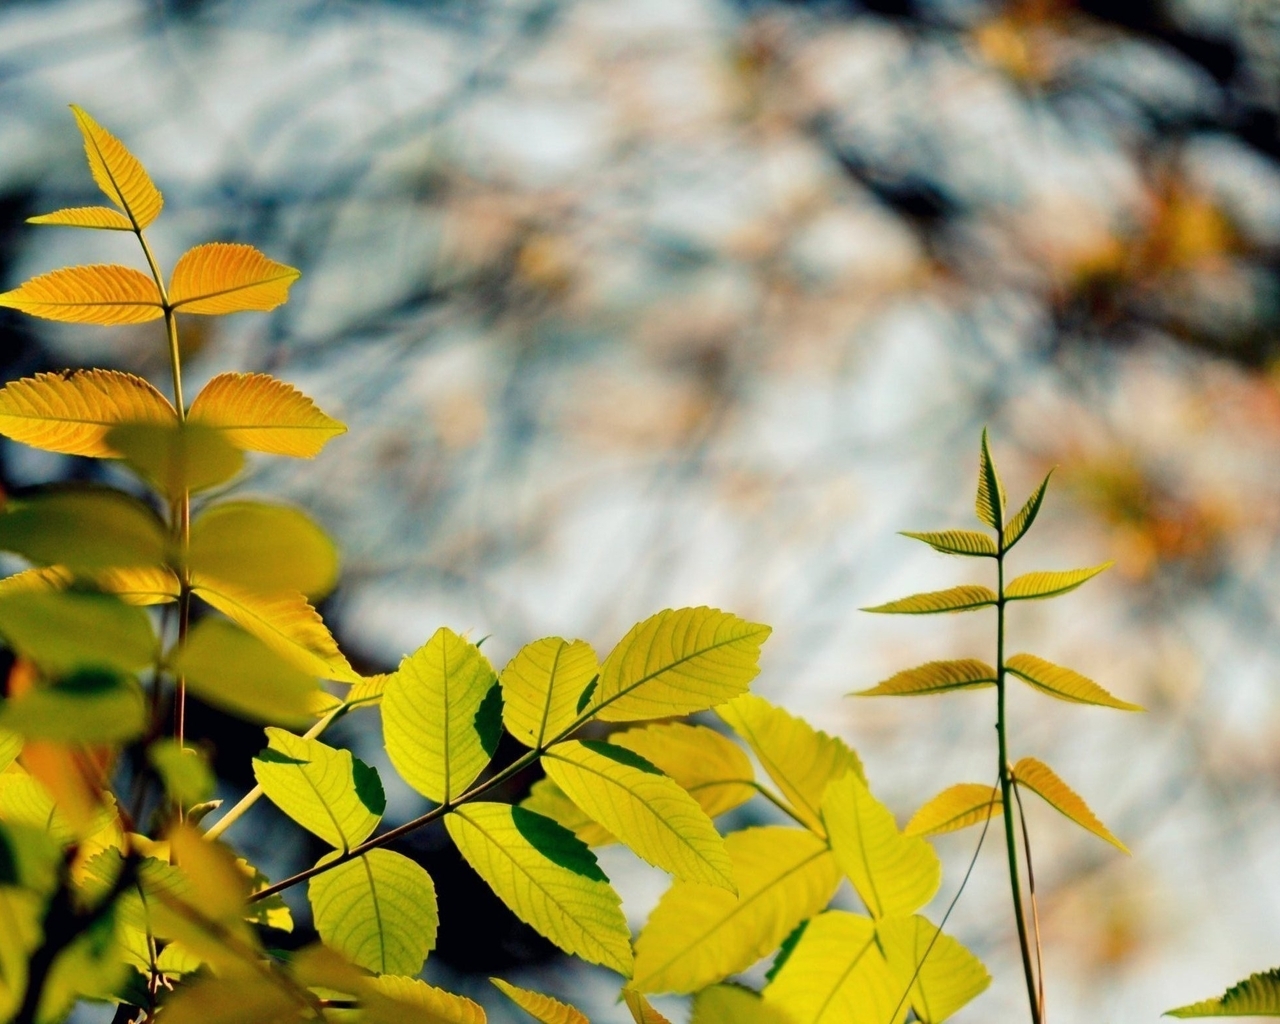 Картинка: Листья, ветки, размытый фон